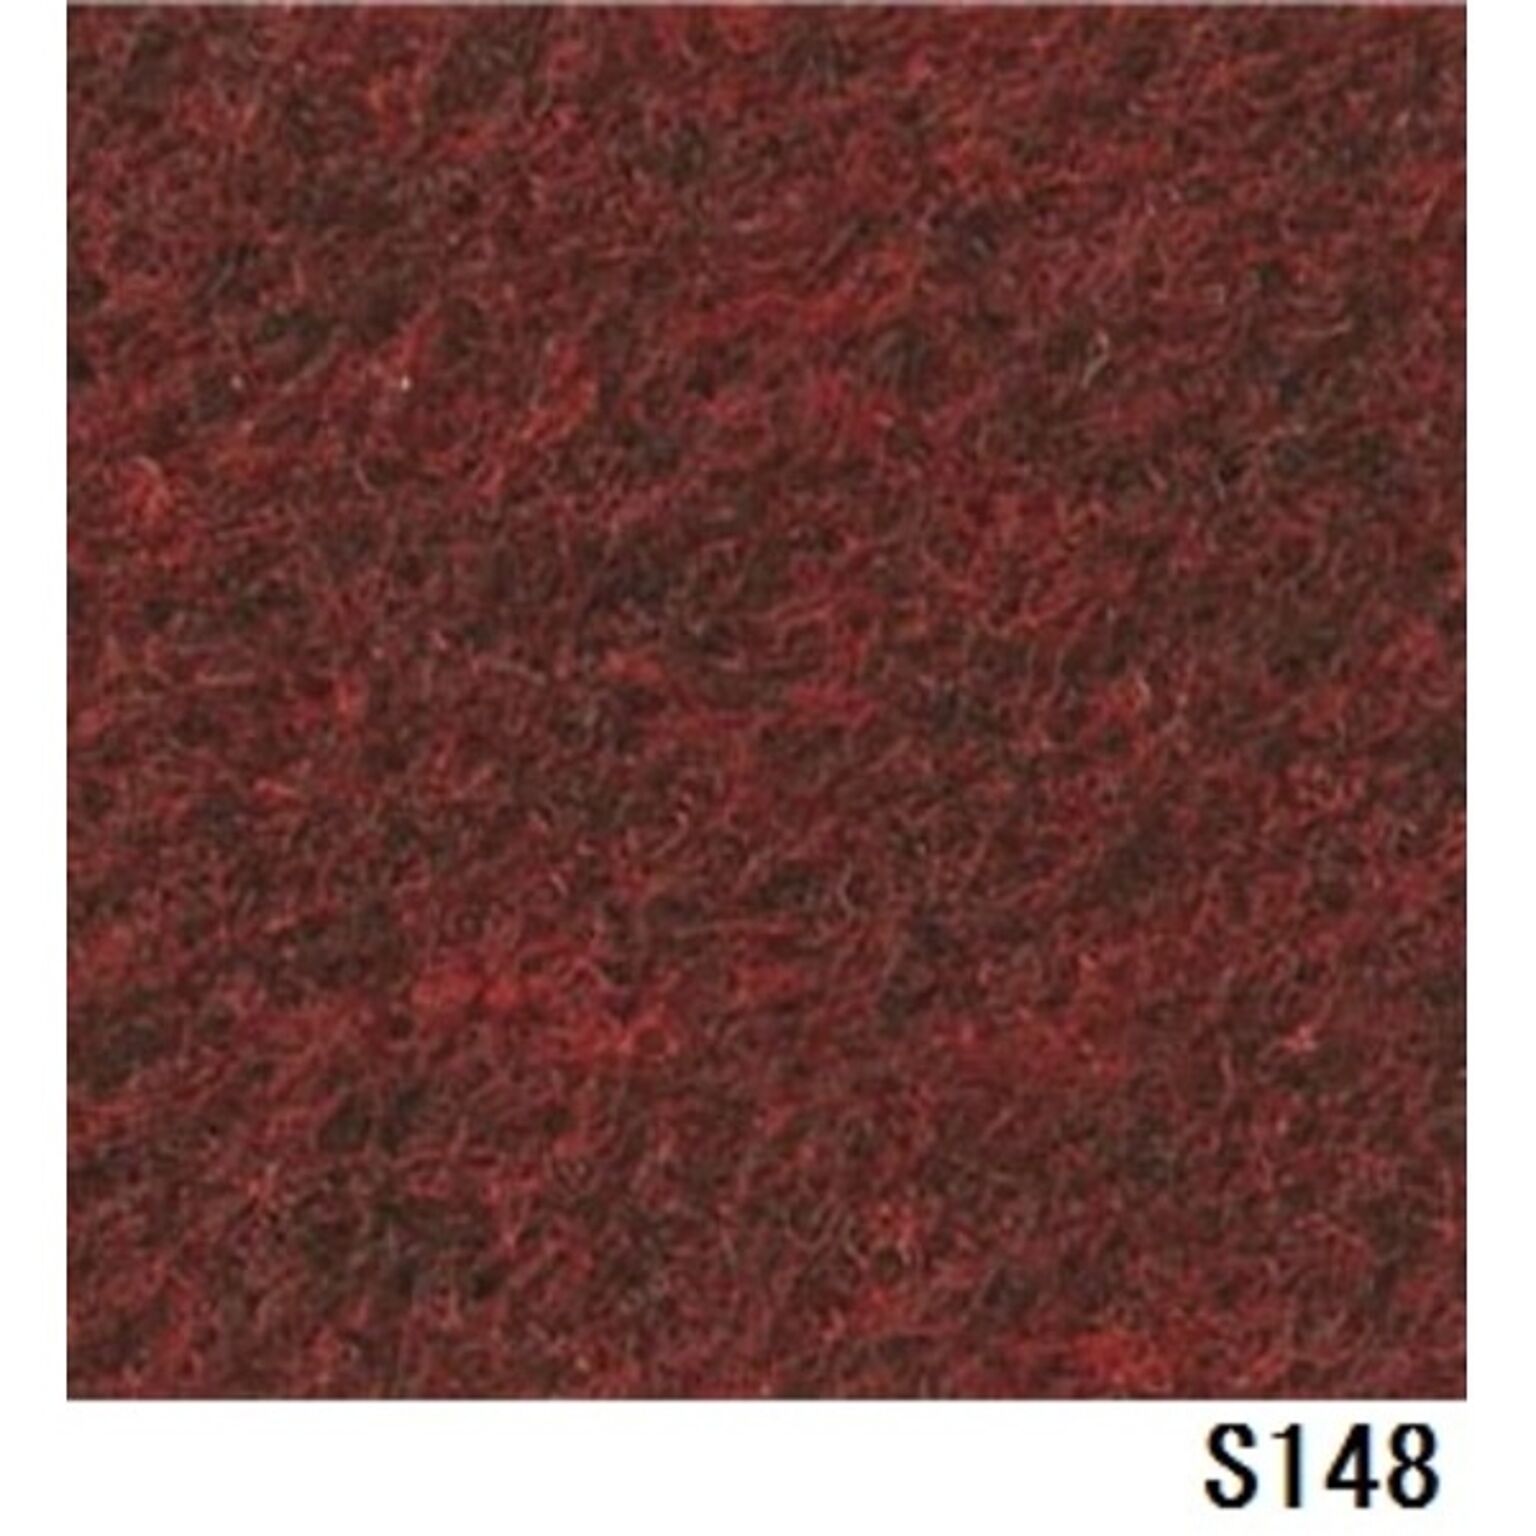 パンチカーペット サンゲツSペットECO 色番S-148 91cm巾×4m